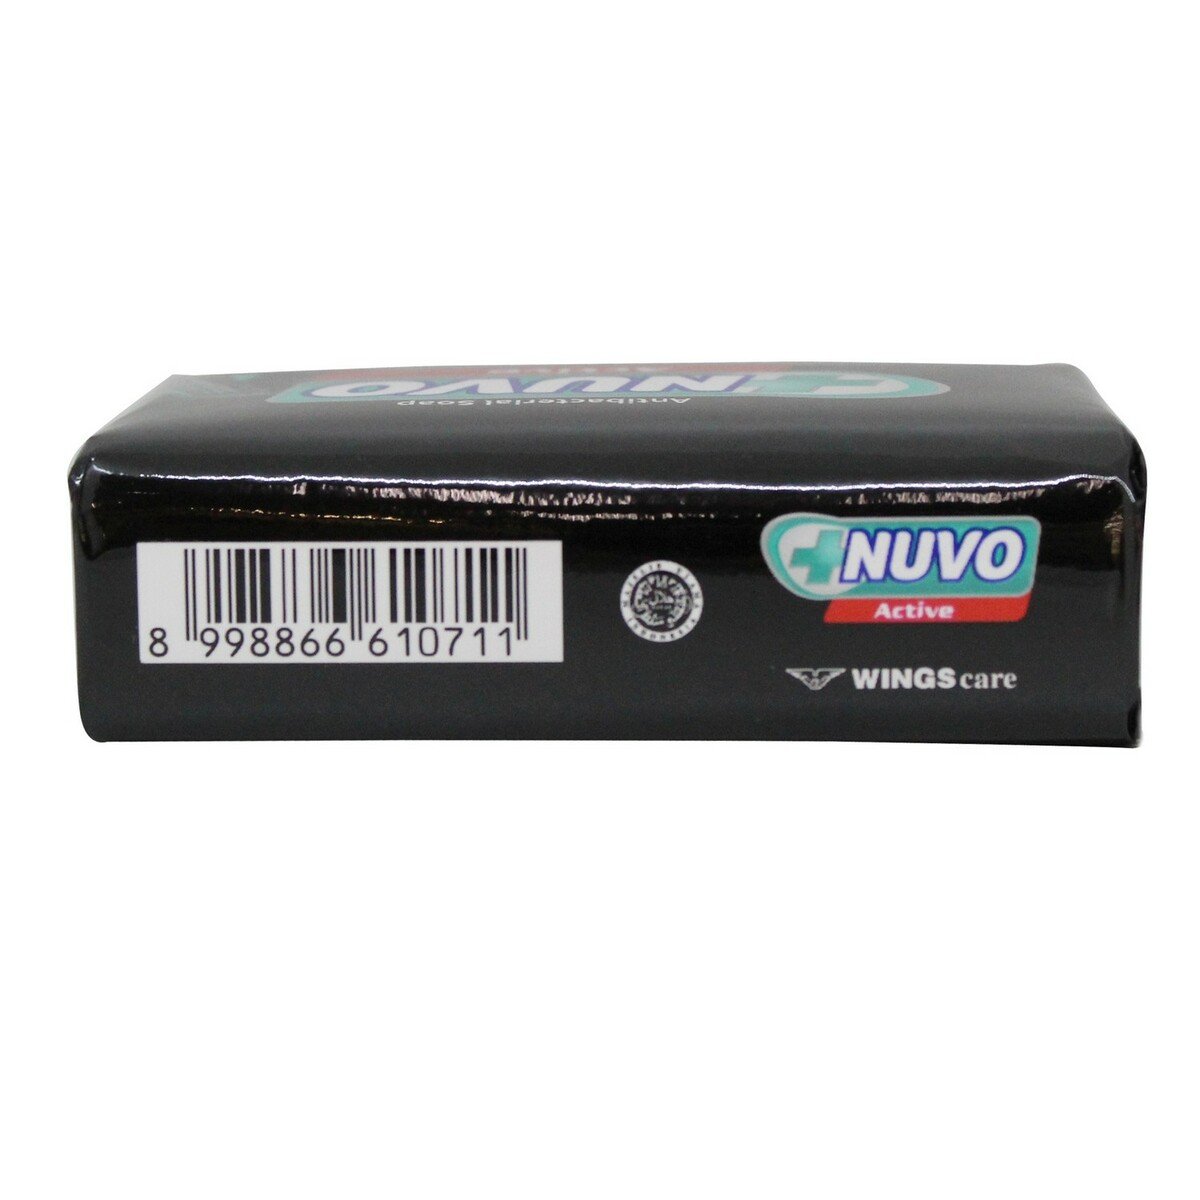 Nuvo Active Clean Sabun Batang 110g